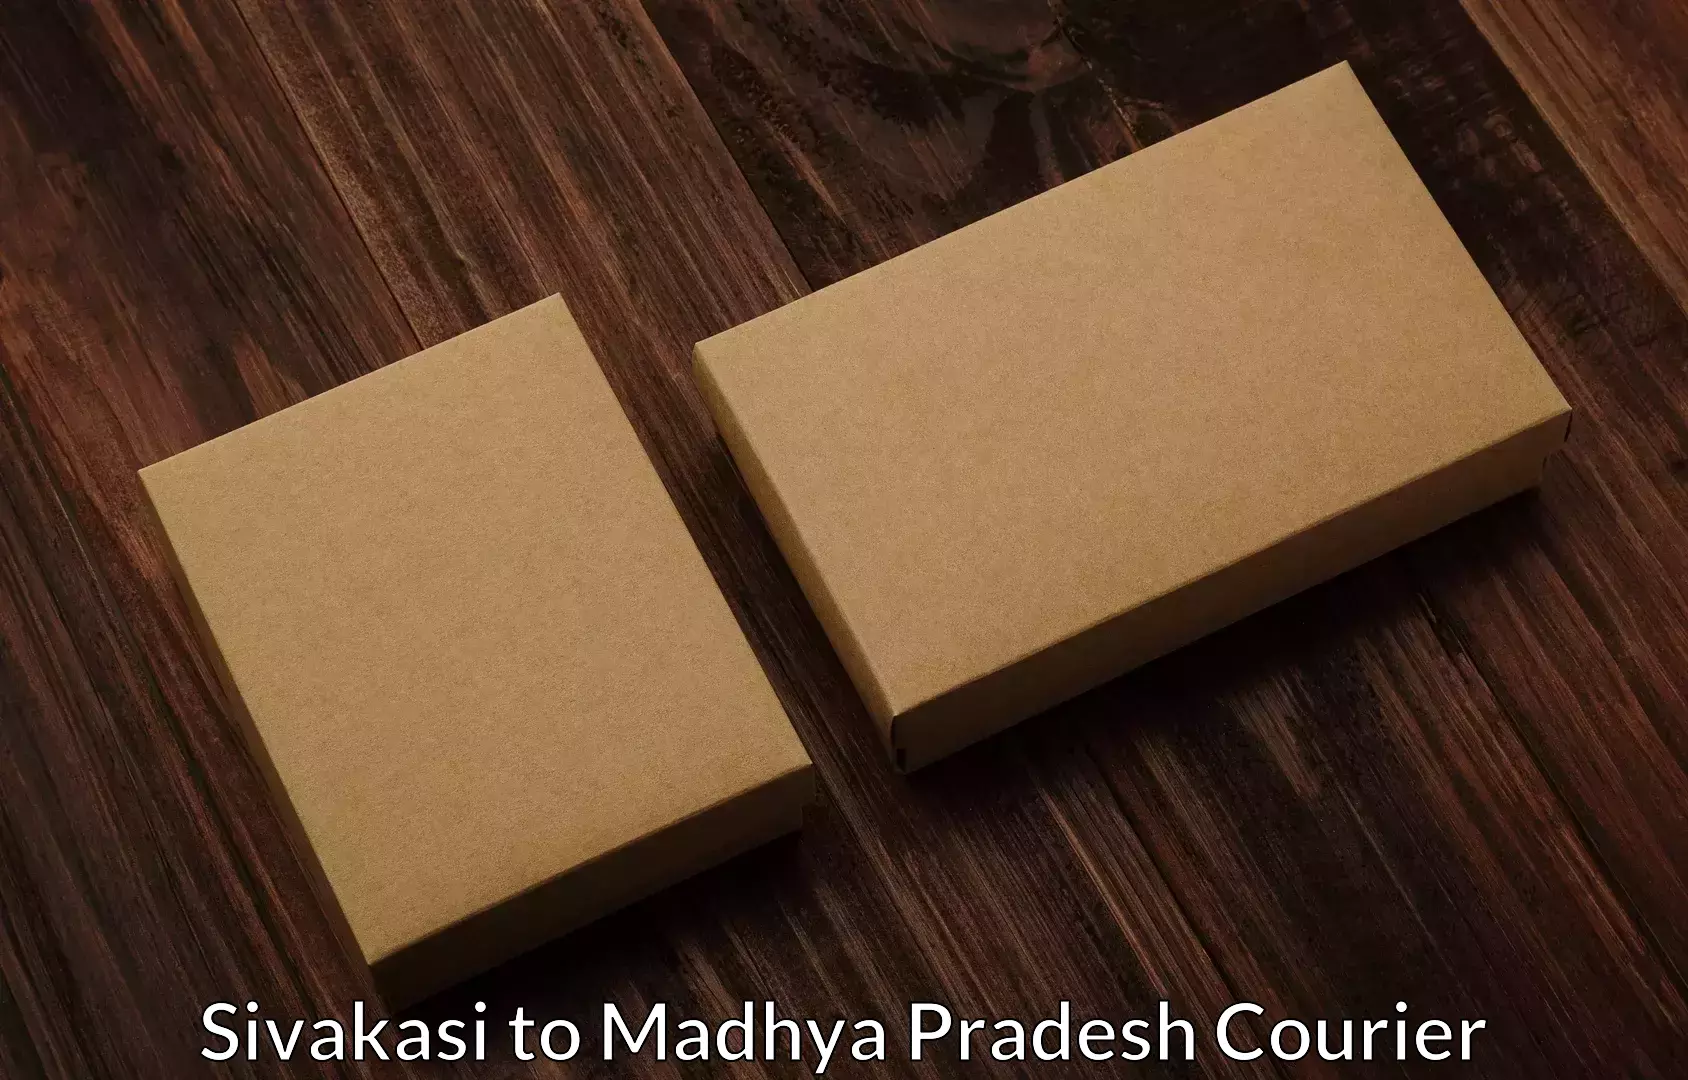 Tailored moving packages Sivakasi to Niwari